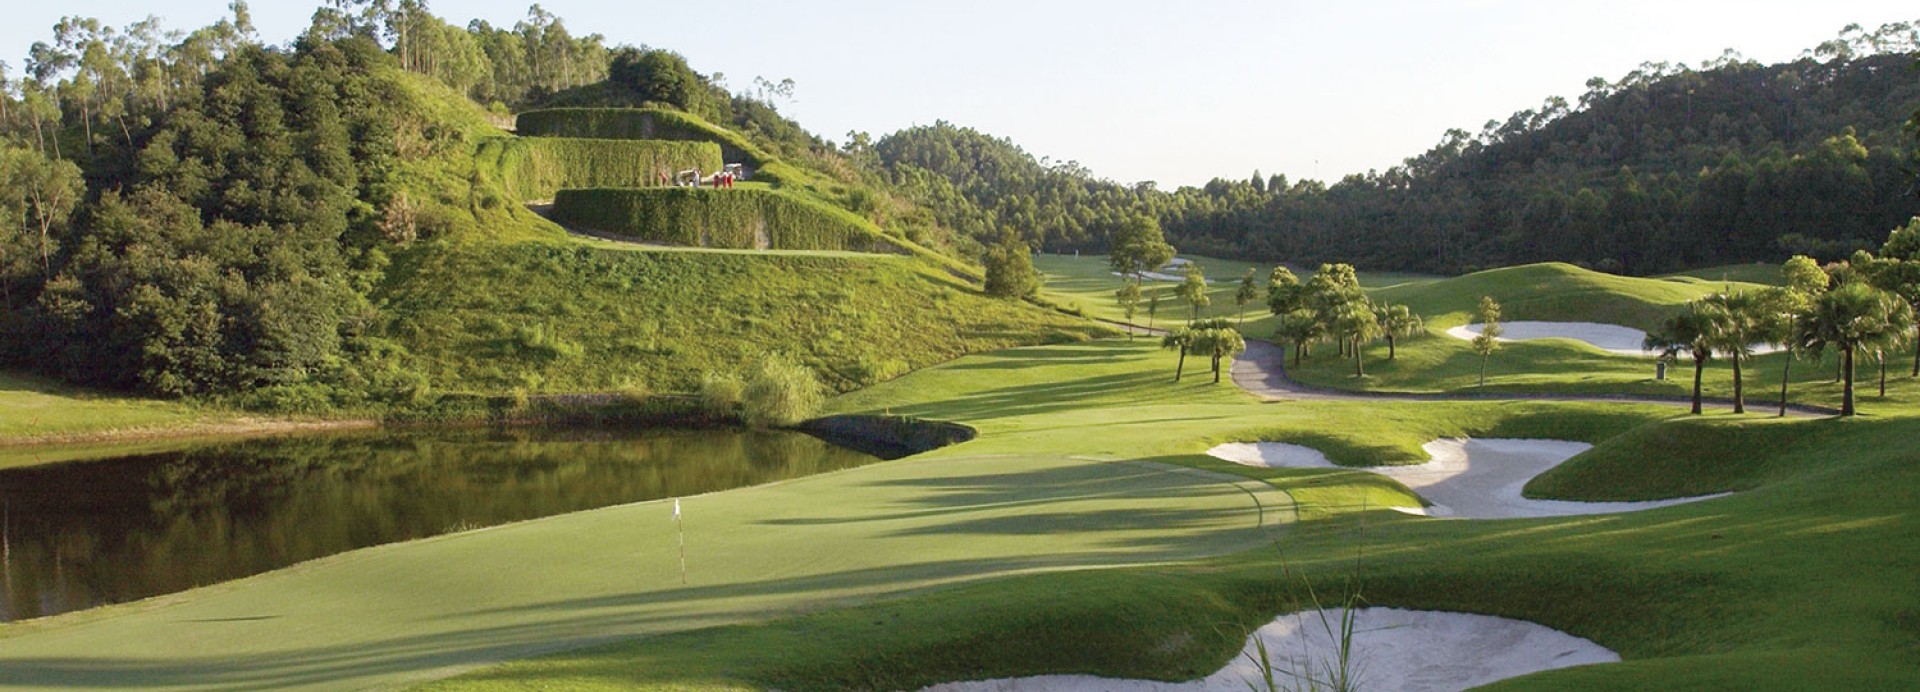 Mission Hills - Shenzhen - Ozaki Course  | Golfové zájezdy, golfová dovolená, luxusní golf